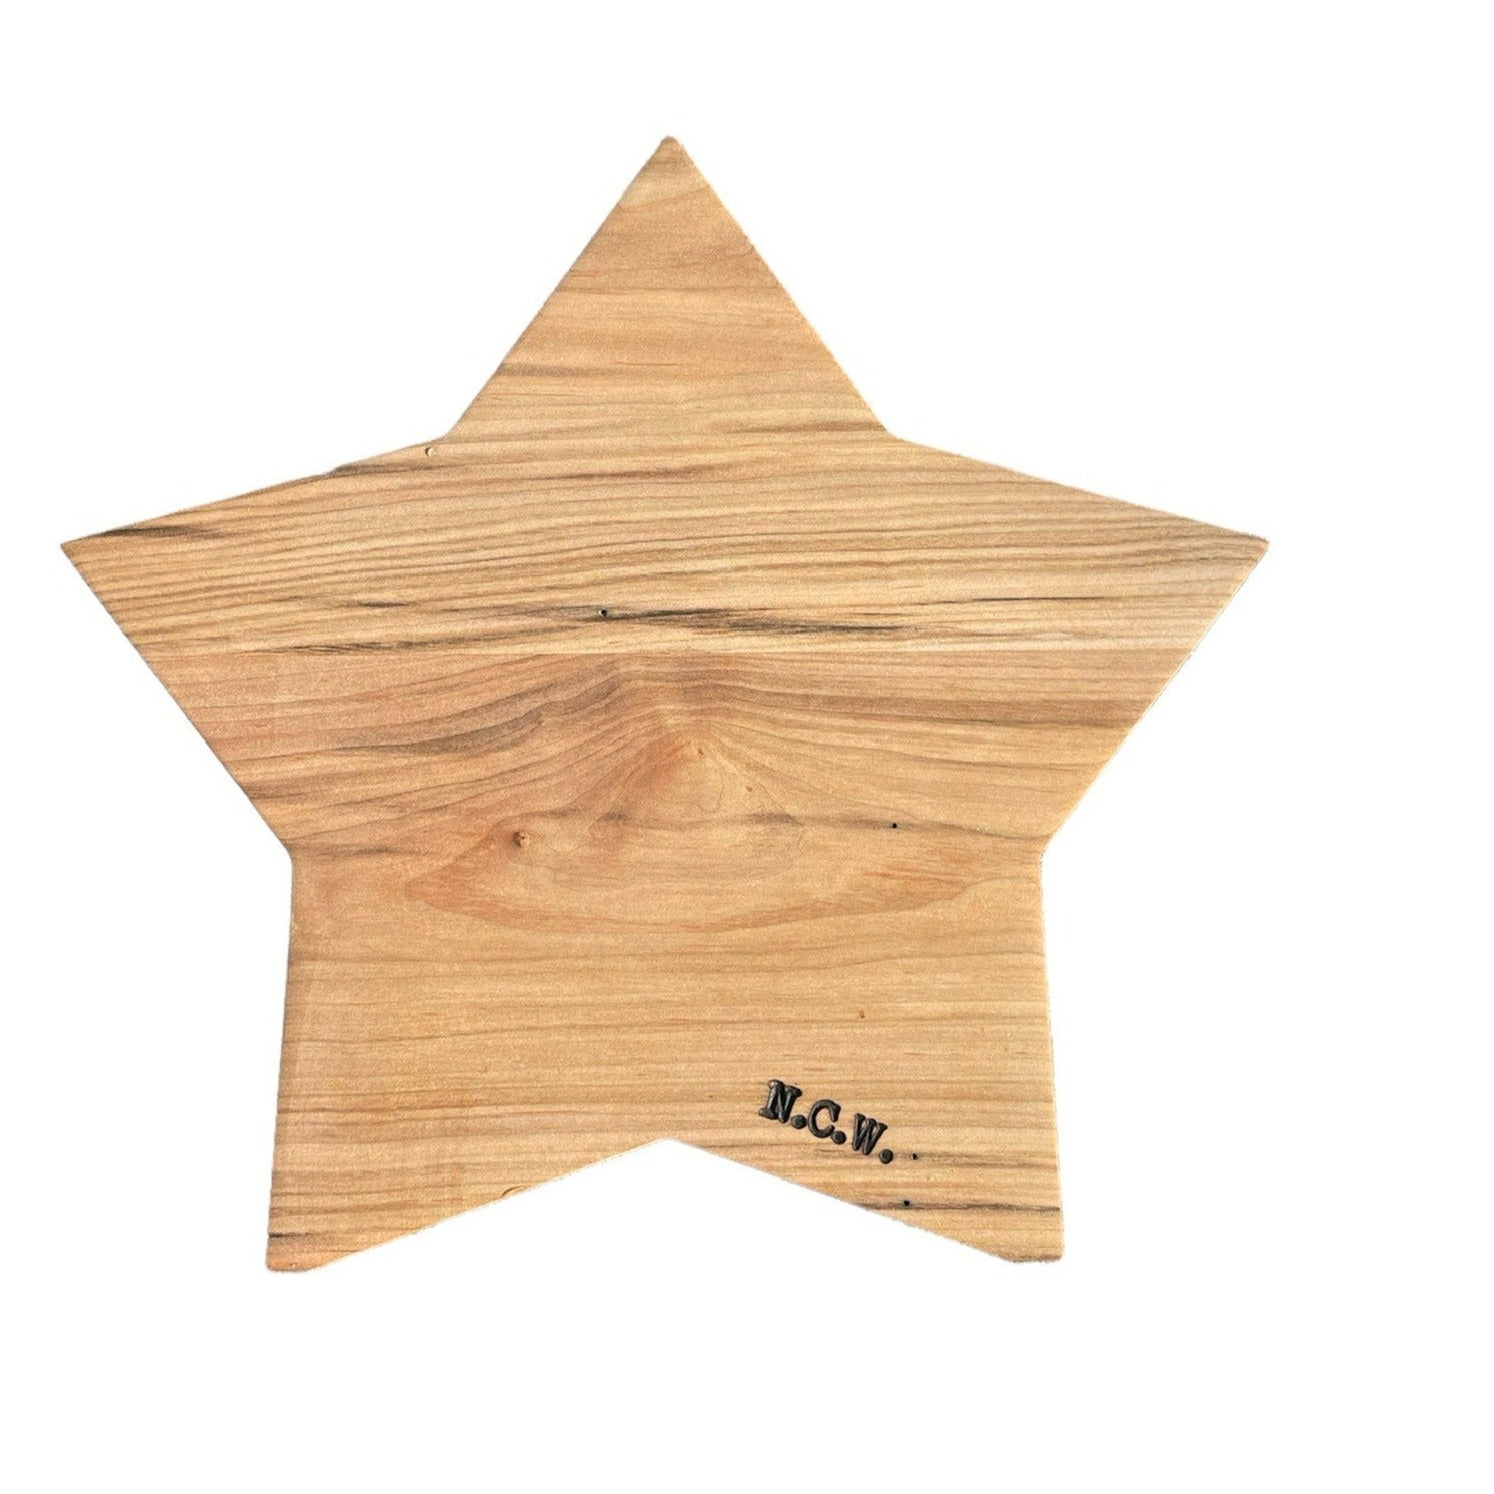 Star Shape Cutting Board